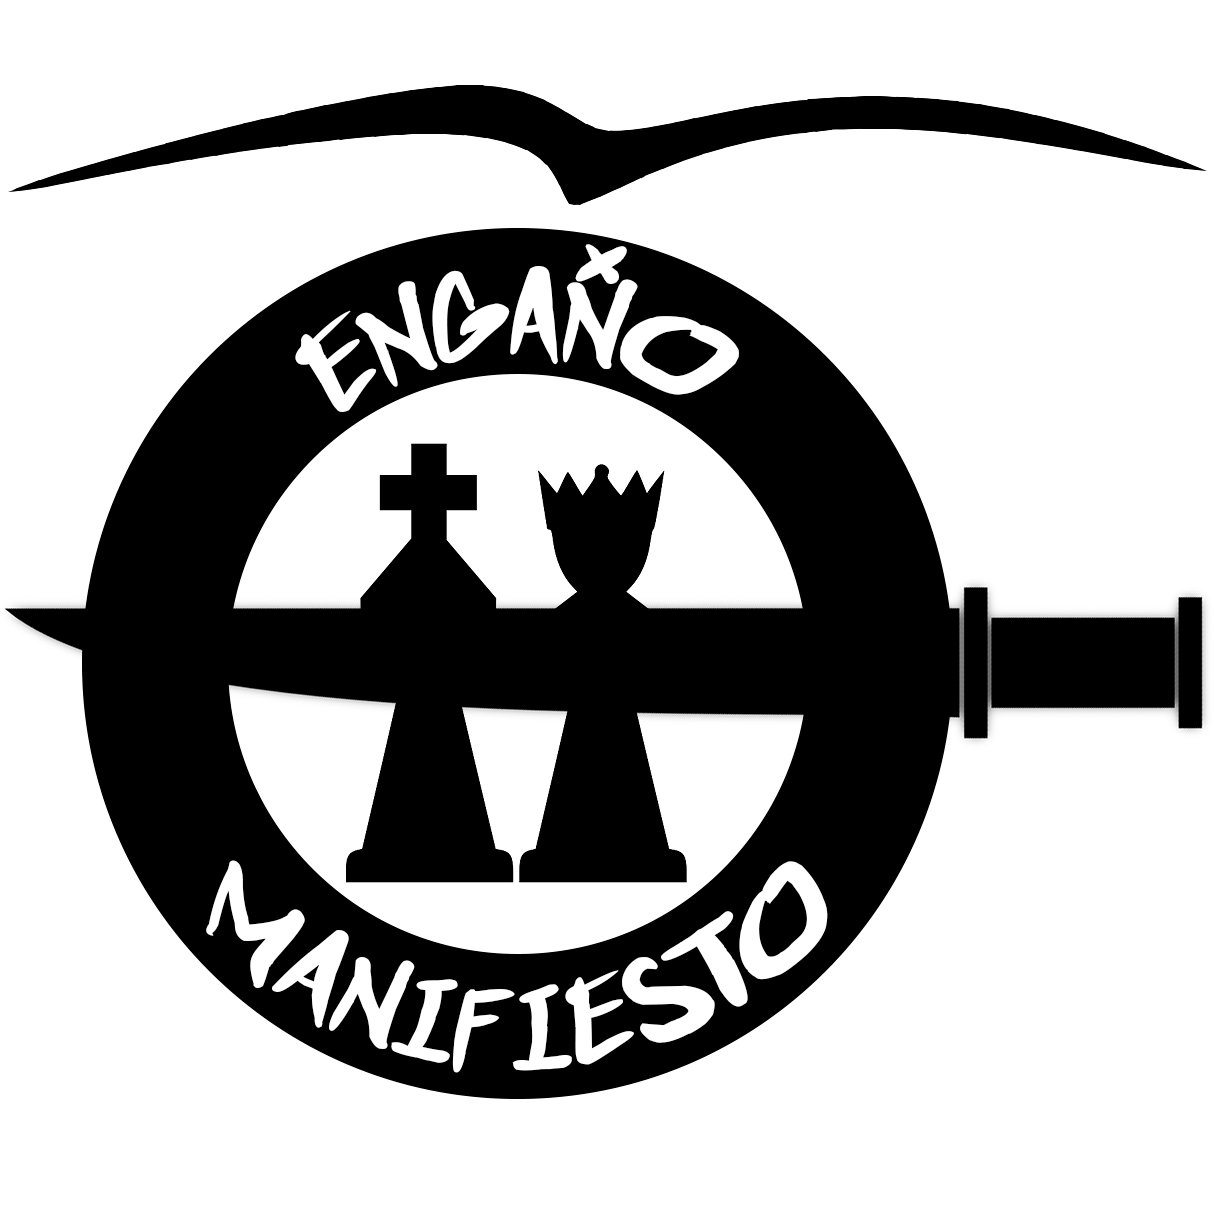 Página de Engaño Manifiesto, grupo de punk-rock de la República de Camuñas